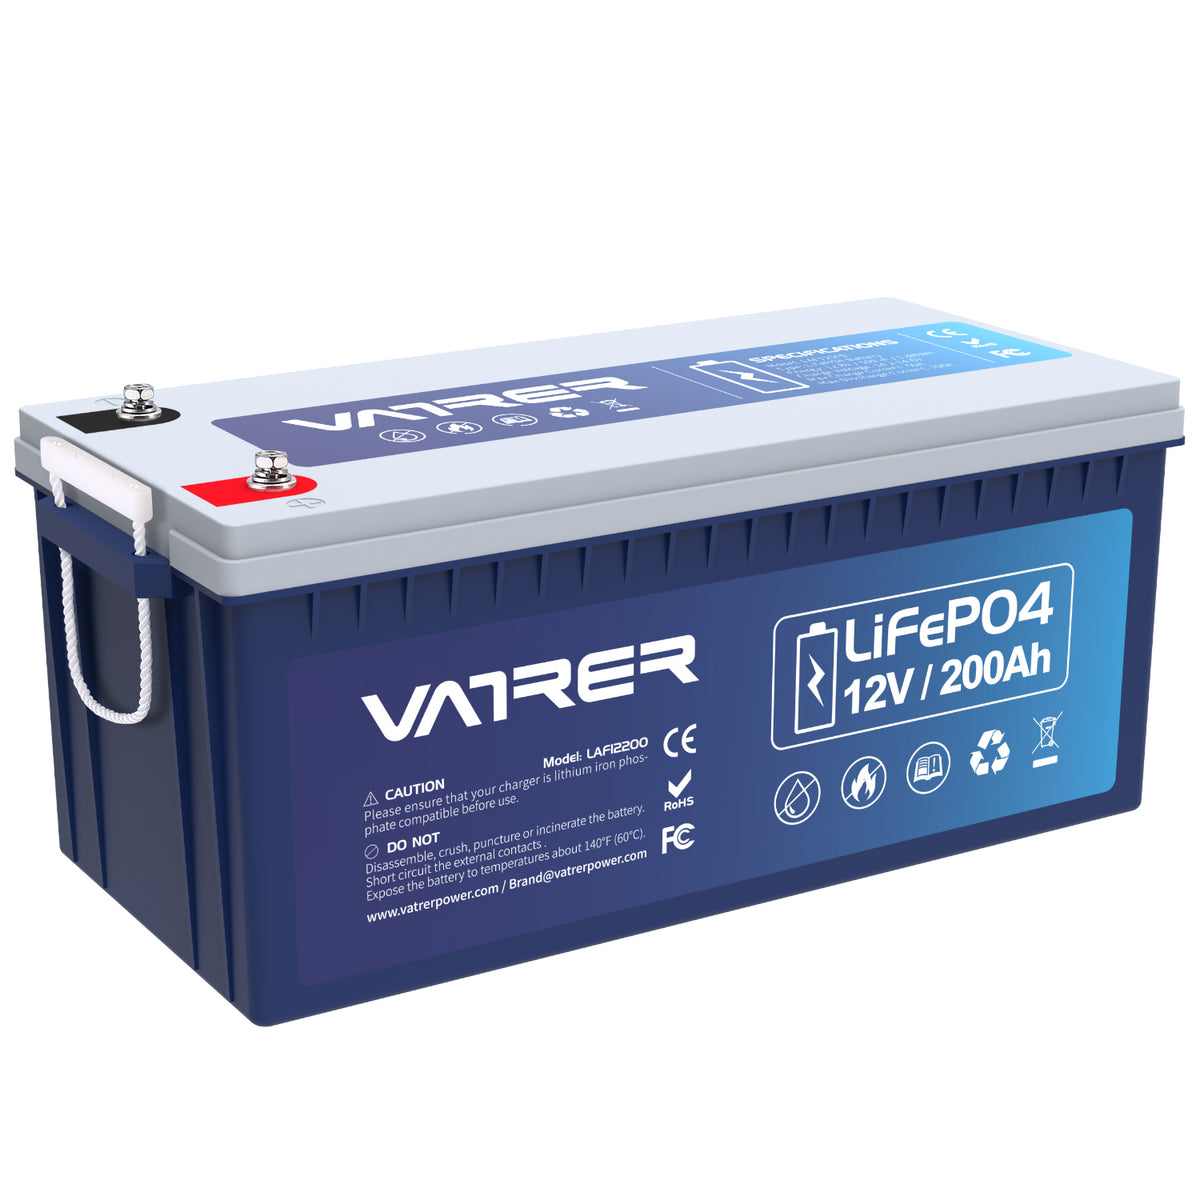 12V 200Ah más batería de litio LiFePO4, 200A BMS incorporado y corte de baja temperatura 11